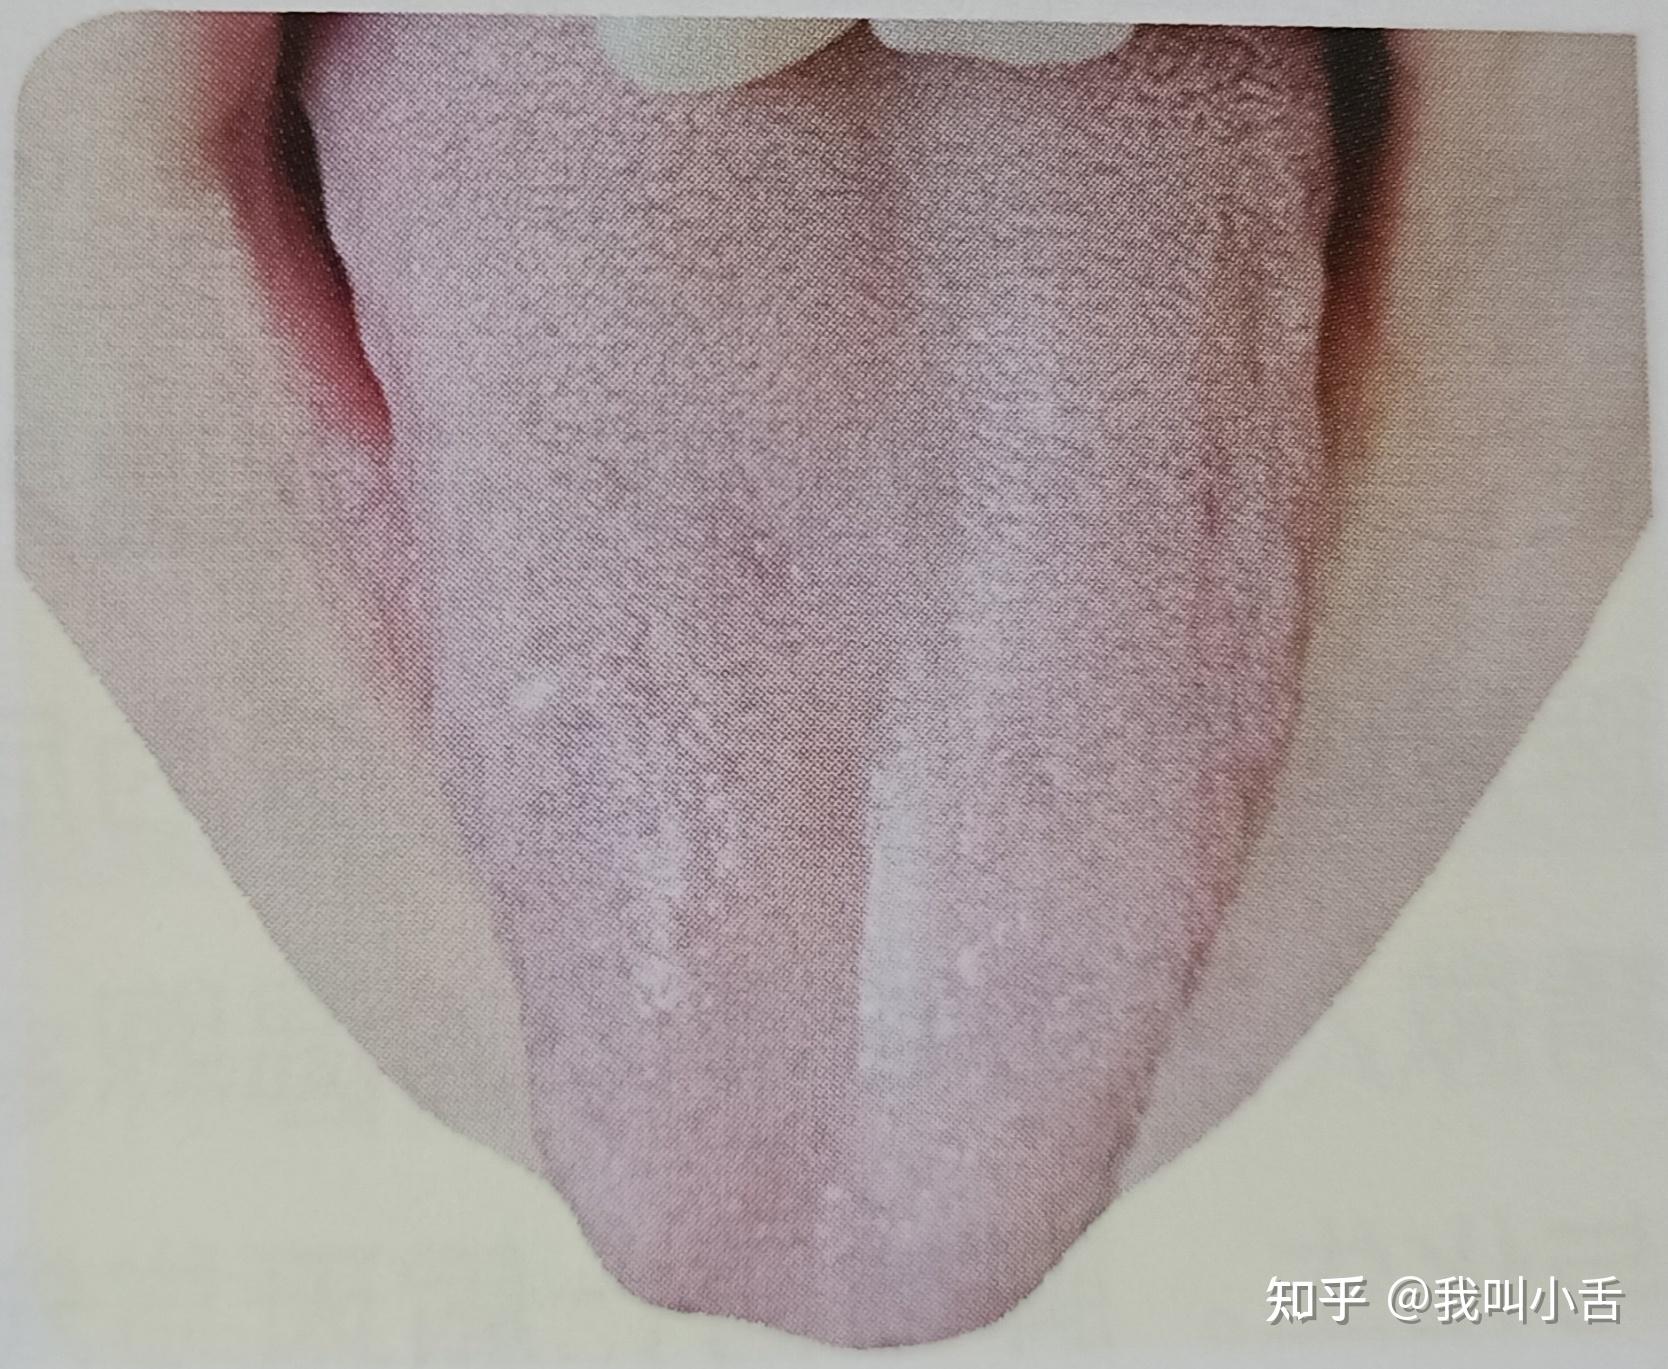 舌头训练法 | 40年脸紧没垮、下颌线清晰 - 哔哩哔哩